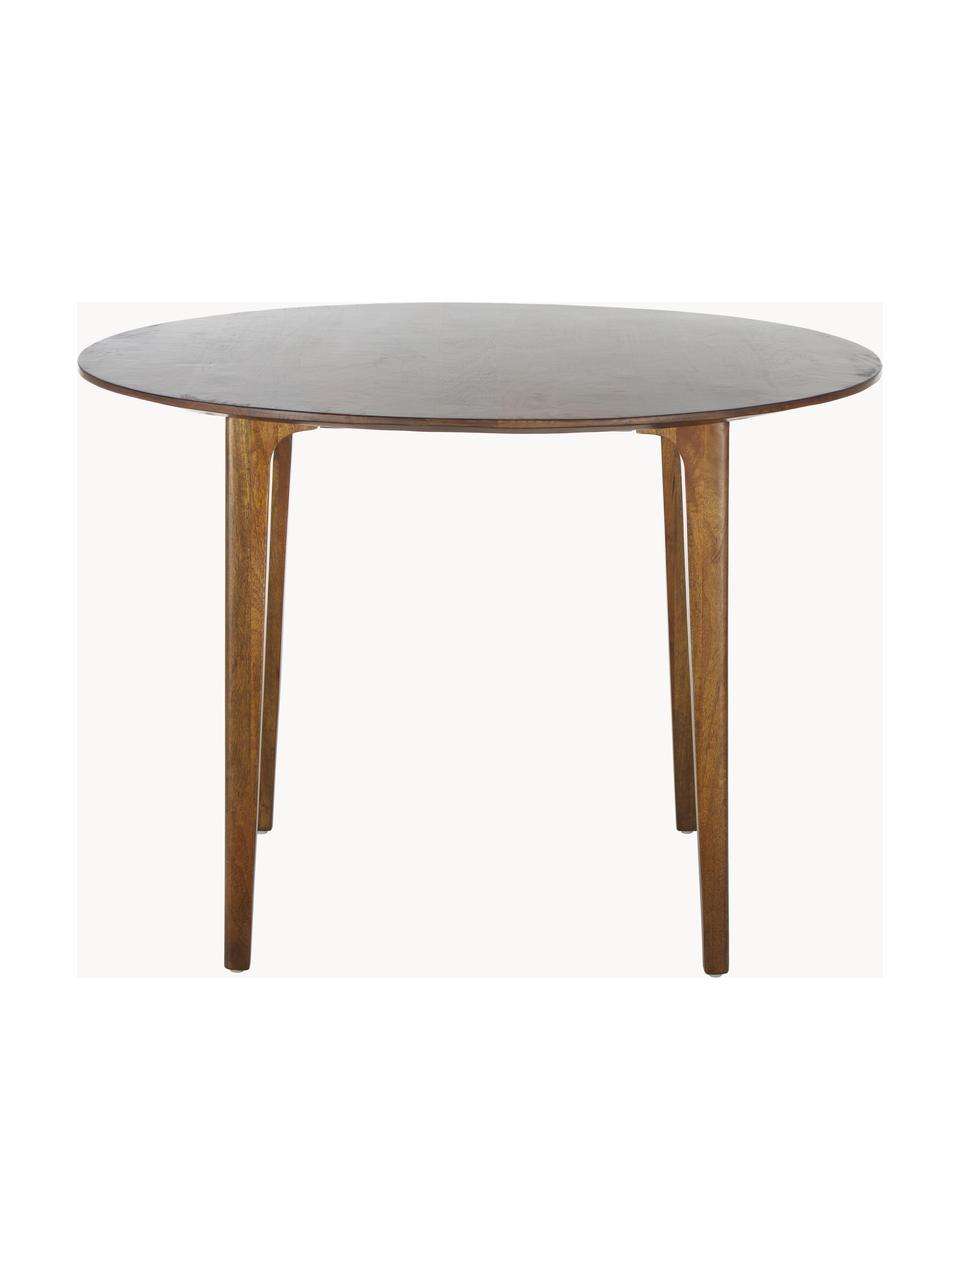 Okrúhly jedálenský stôl z masívneho mangového dreva Archie, Ø 110 cm, Masívne mangové drevo, lakované

Tento výrobok je vyrobený z dreva s certifikátom FSC®, ktoré pochádza z udržateľných zdrojov, Mangové drevo, Ø 110 cm